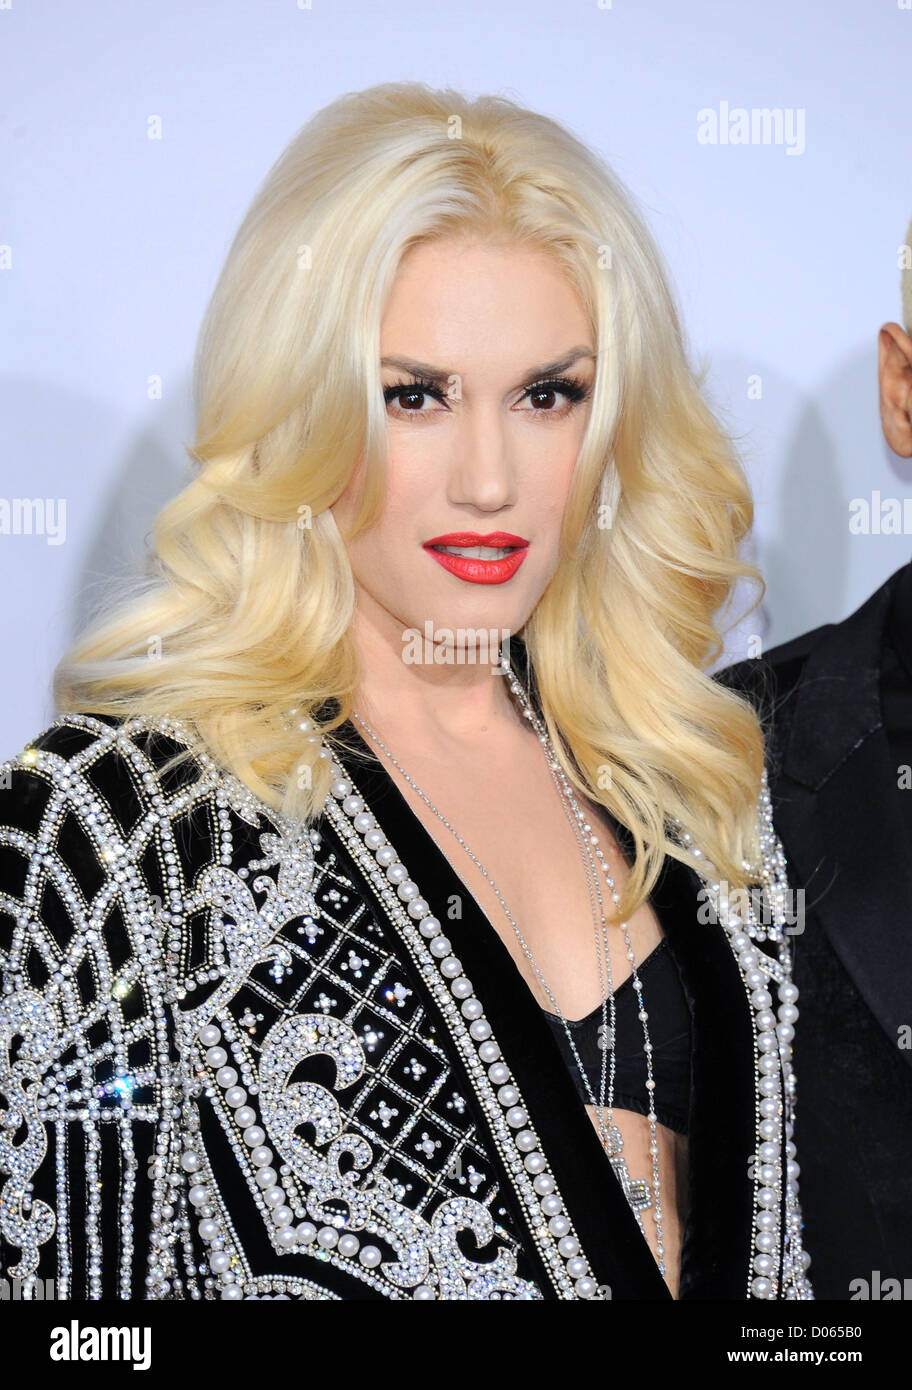 Los Angeles, Californie. 18 novembre 2012. Gwen Stefani arrive à la 40e anniversaire des American Music Awards à Los Angeles, CA 18 Nov 2012 Banque D'Images